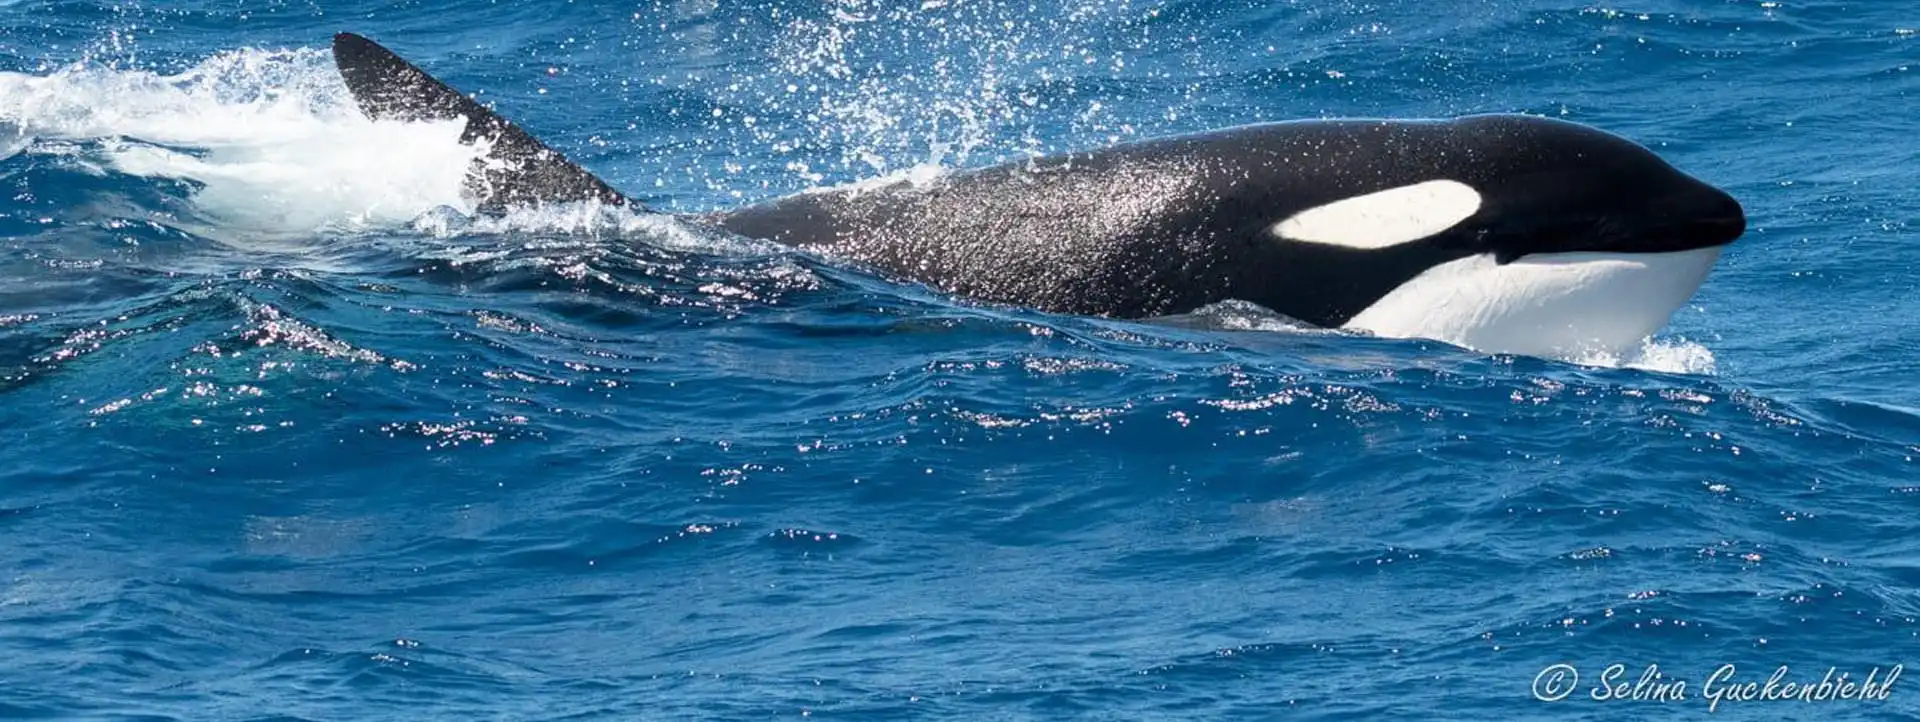 ORCA-Whale-Watching-Tours-WA copy